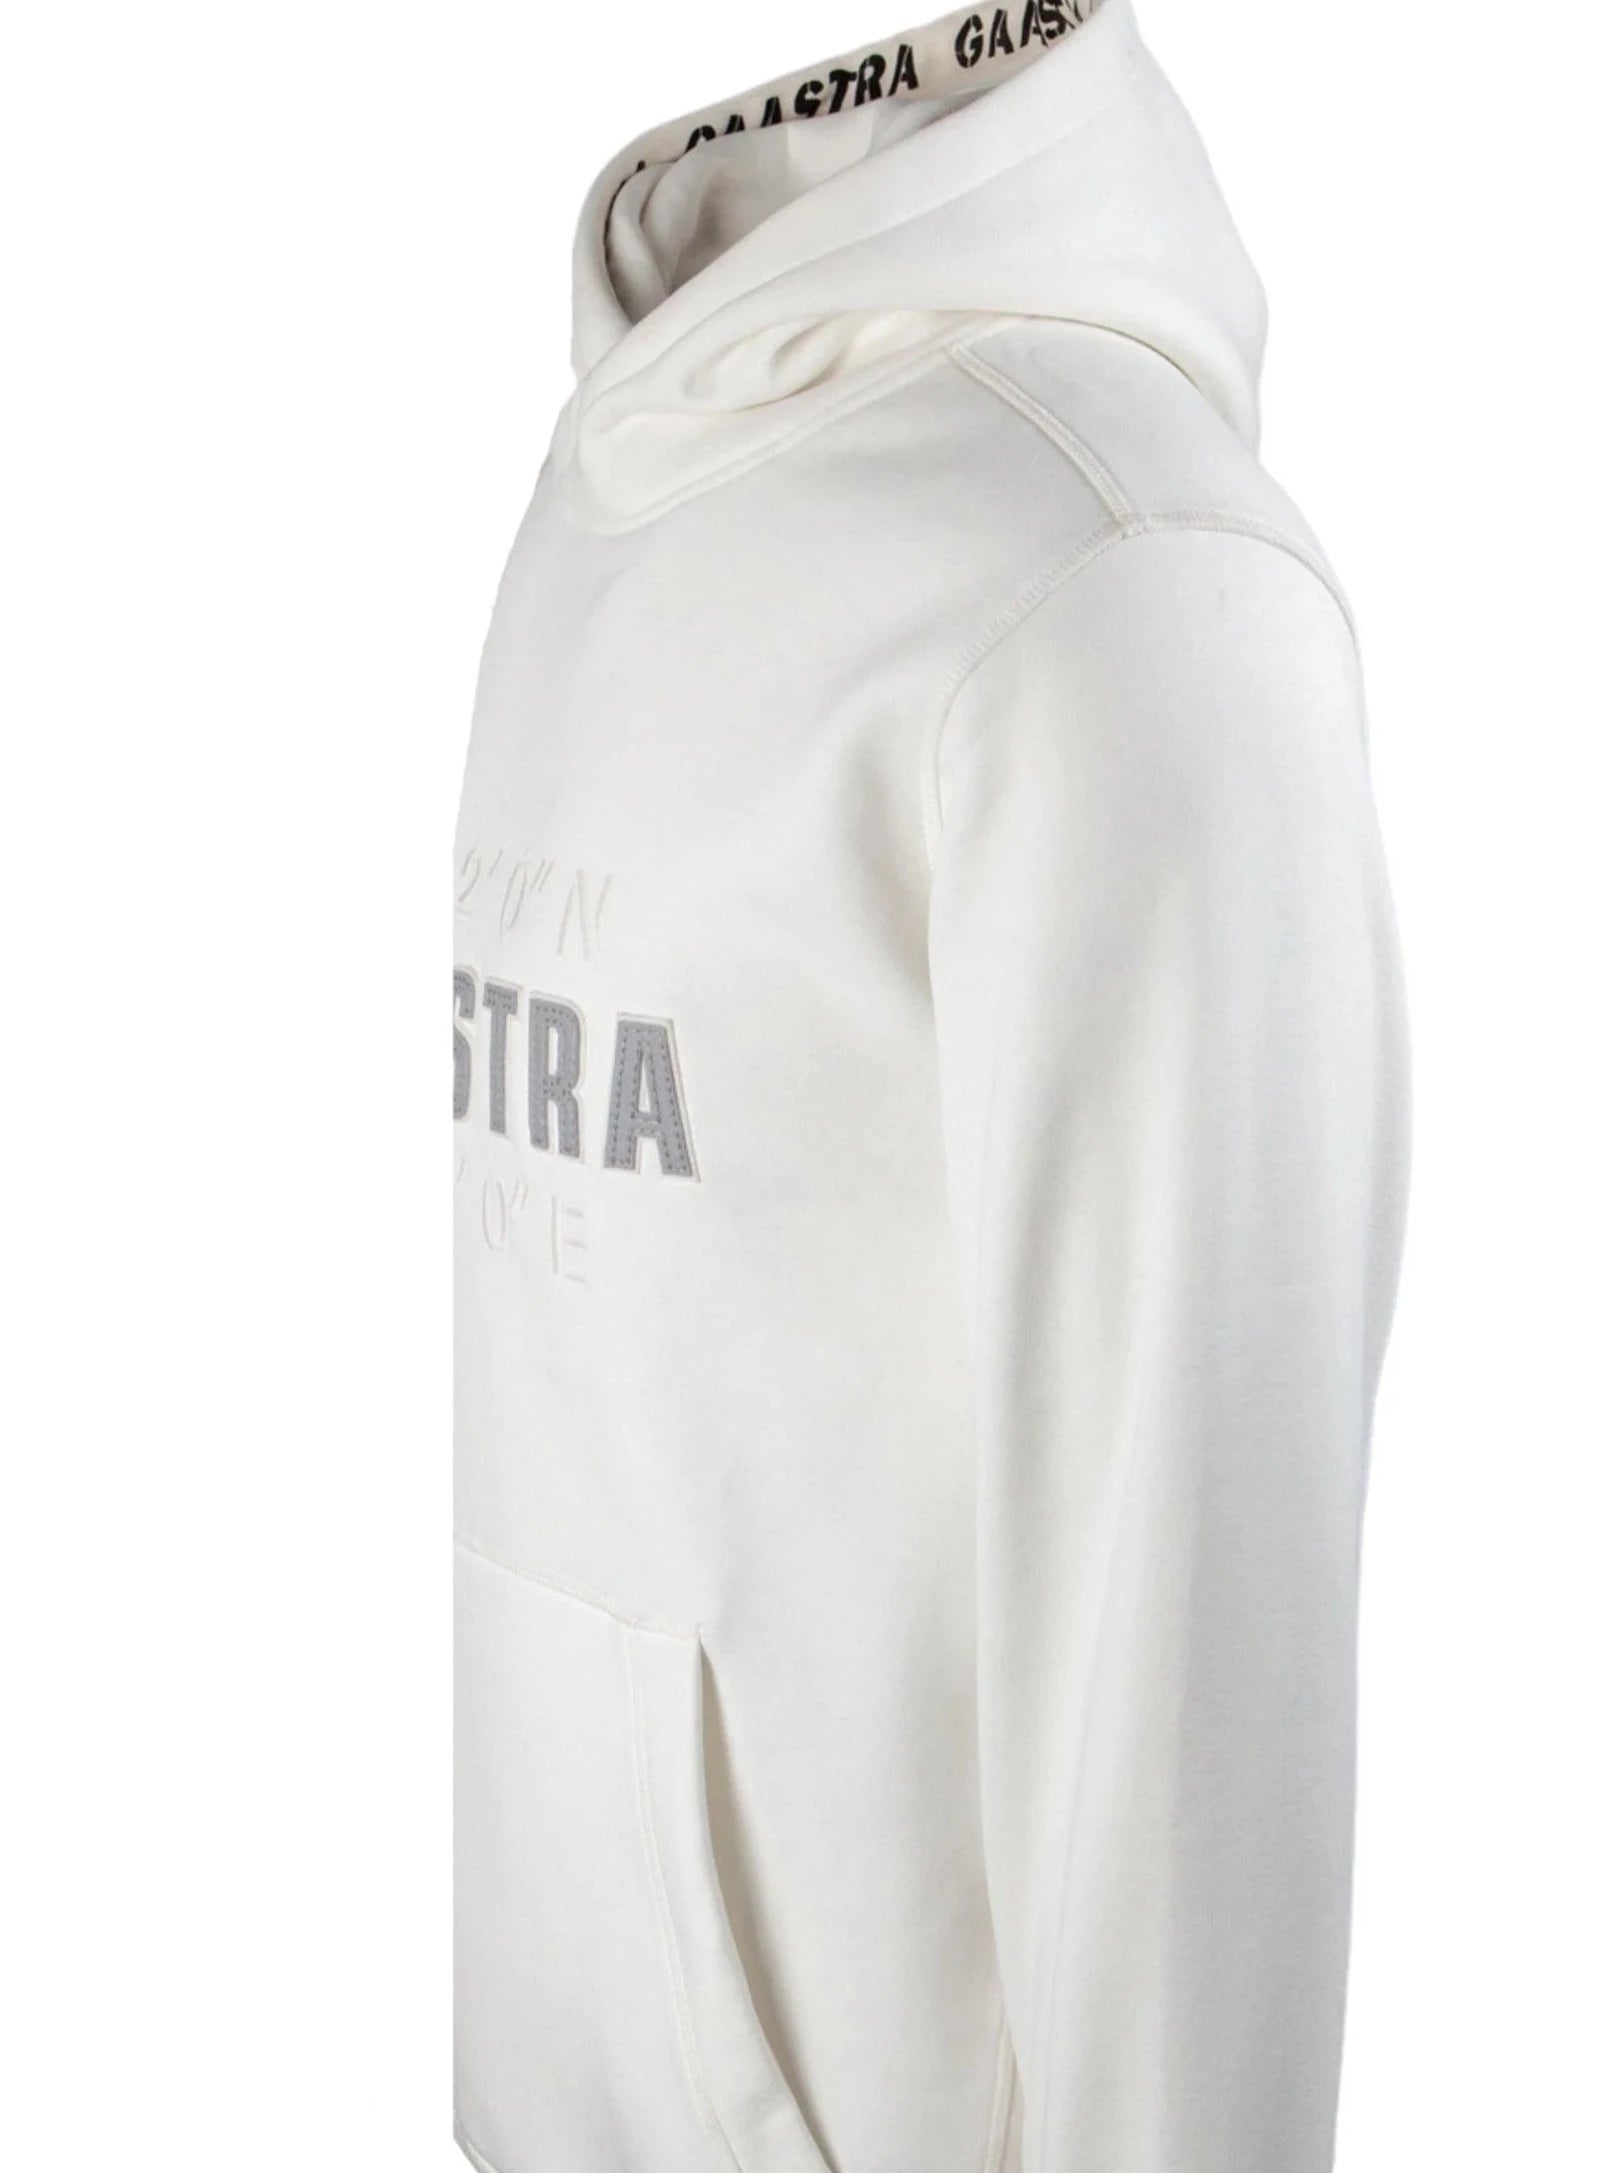 Gaastra Men's hoodie sweatshirt "Artic", Off-white